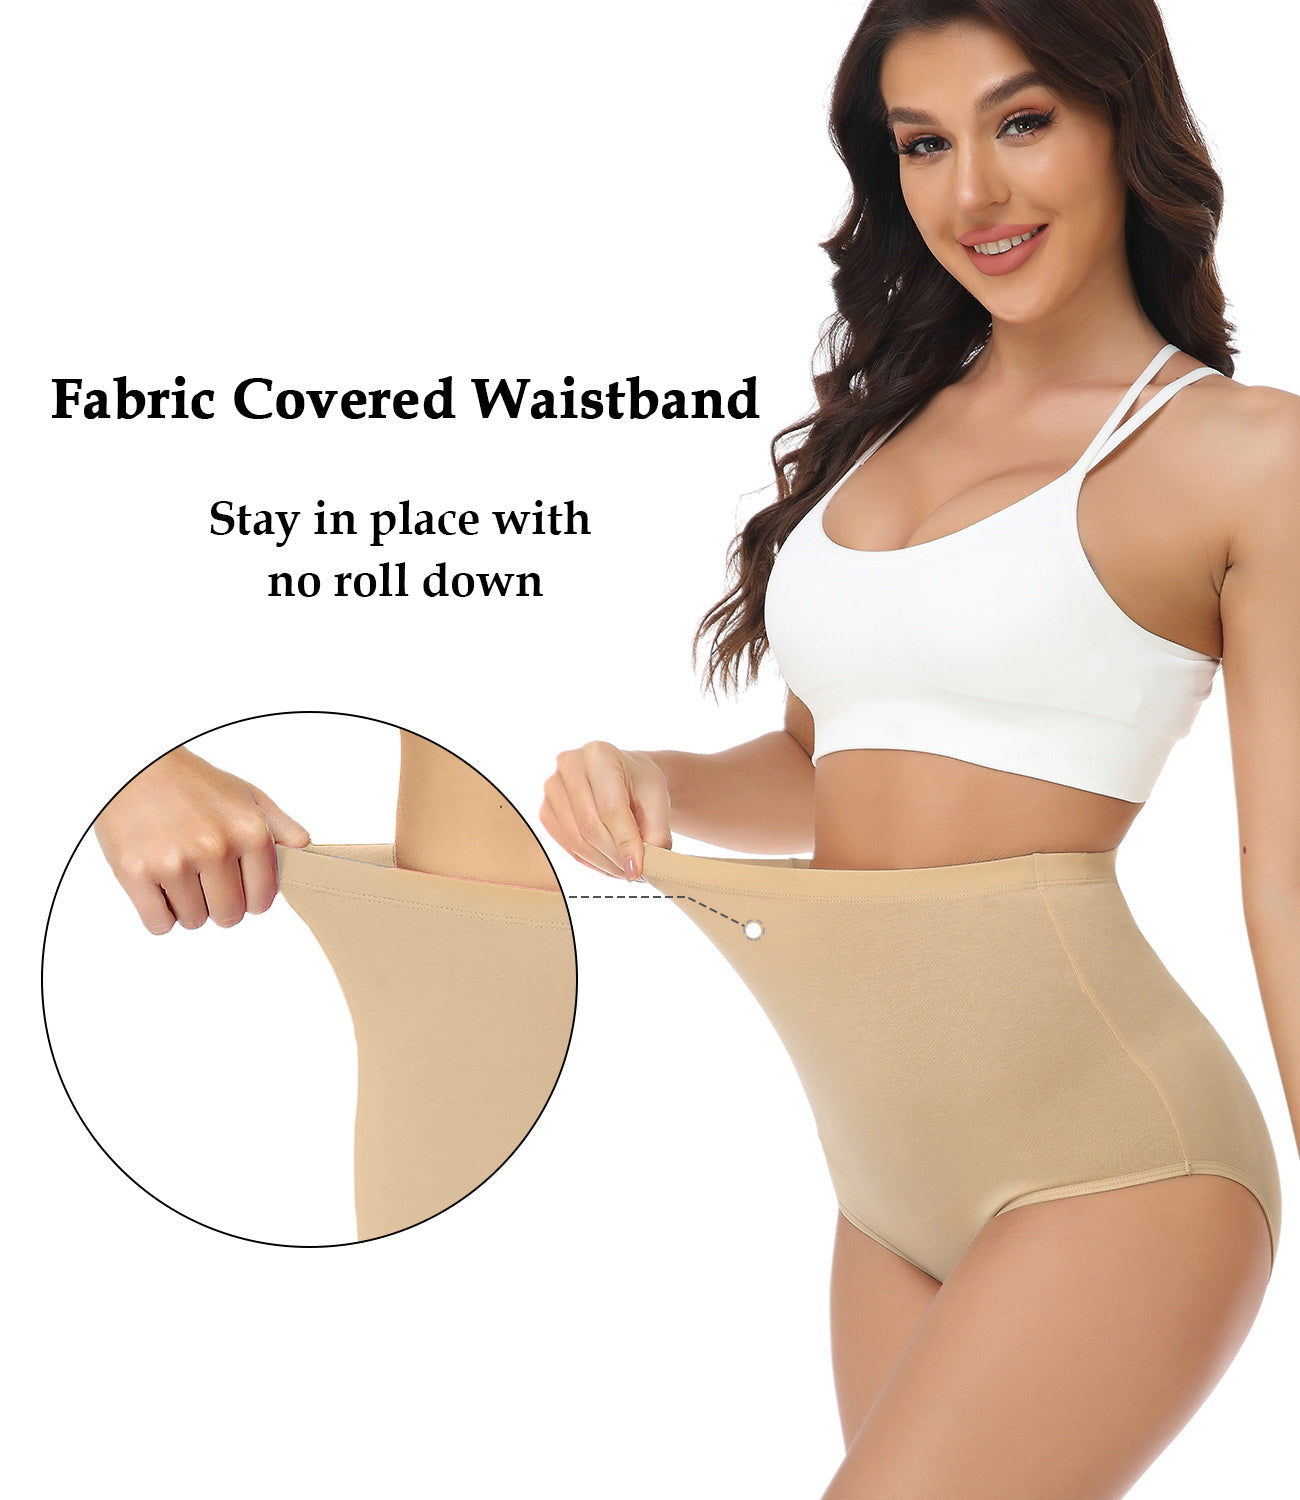 wirarpa Women's Underwear Cotton Super High Waisted Briefs Stretch Ful –  Wirarpa Apparel, Inc.